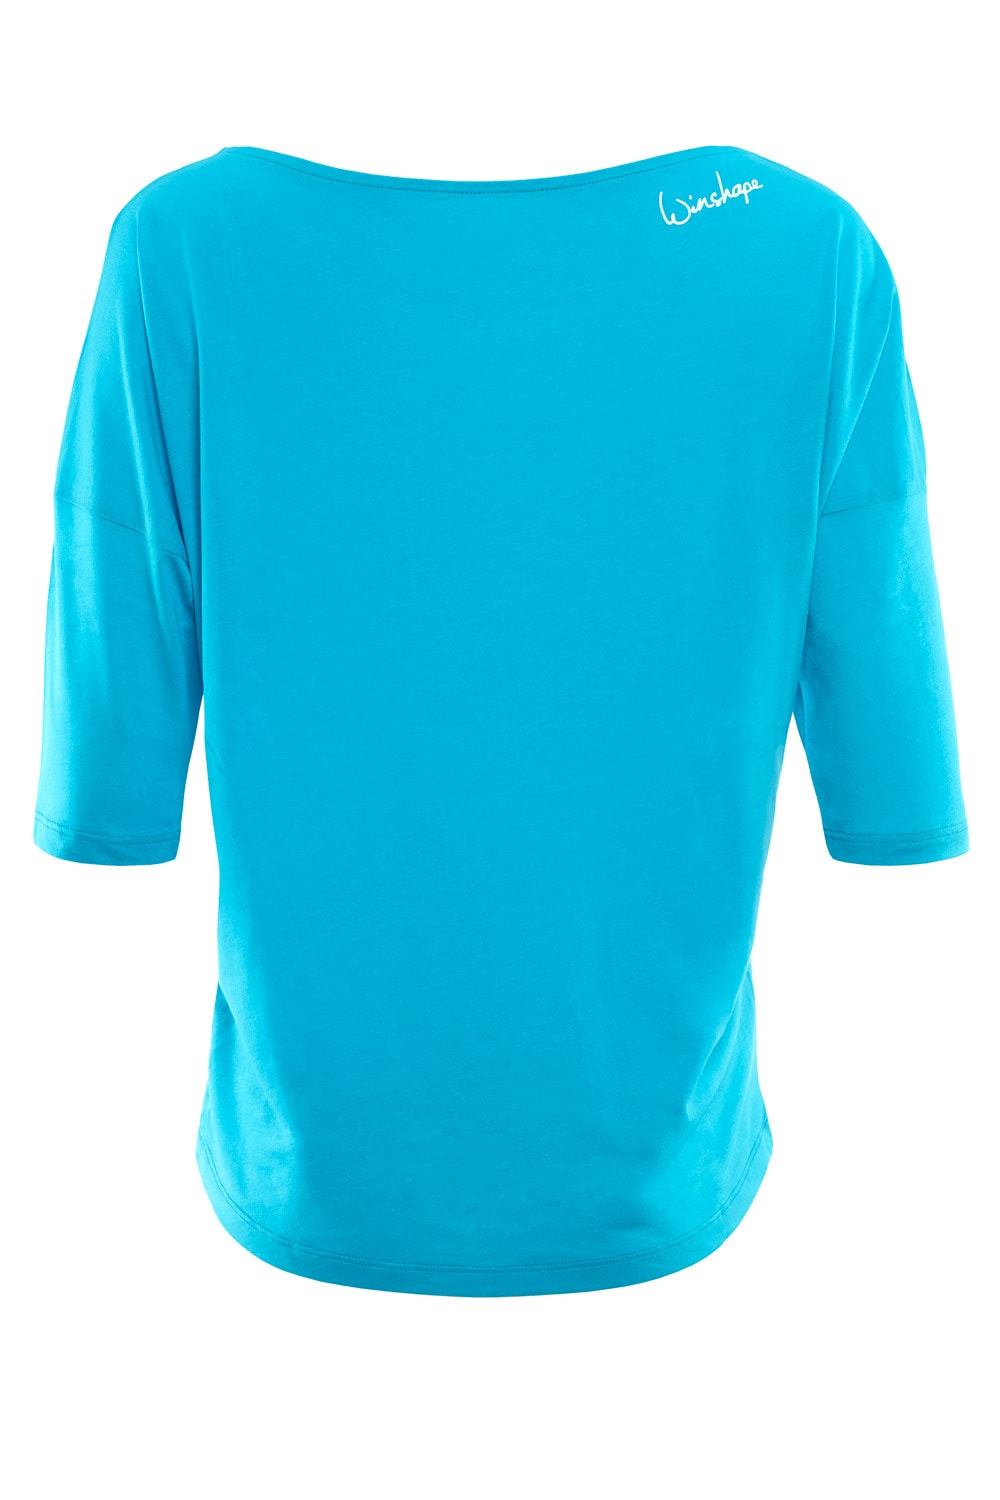 Winshape 3/4-Arm-Shirt »MCS001 ultra mit weißem bei OTTO kaufen leicht«, Glitzer-Aufdruck